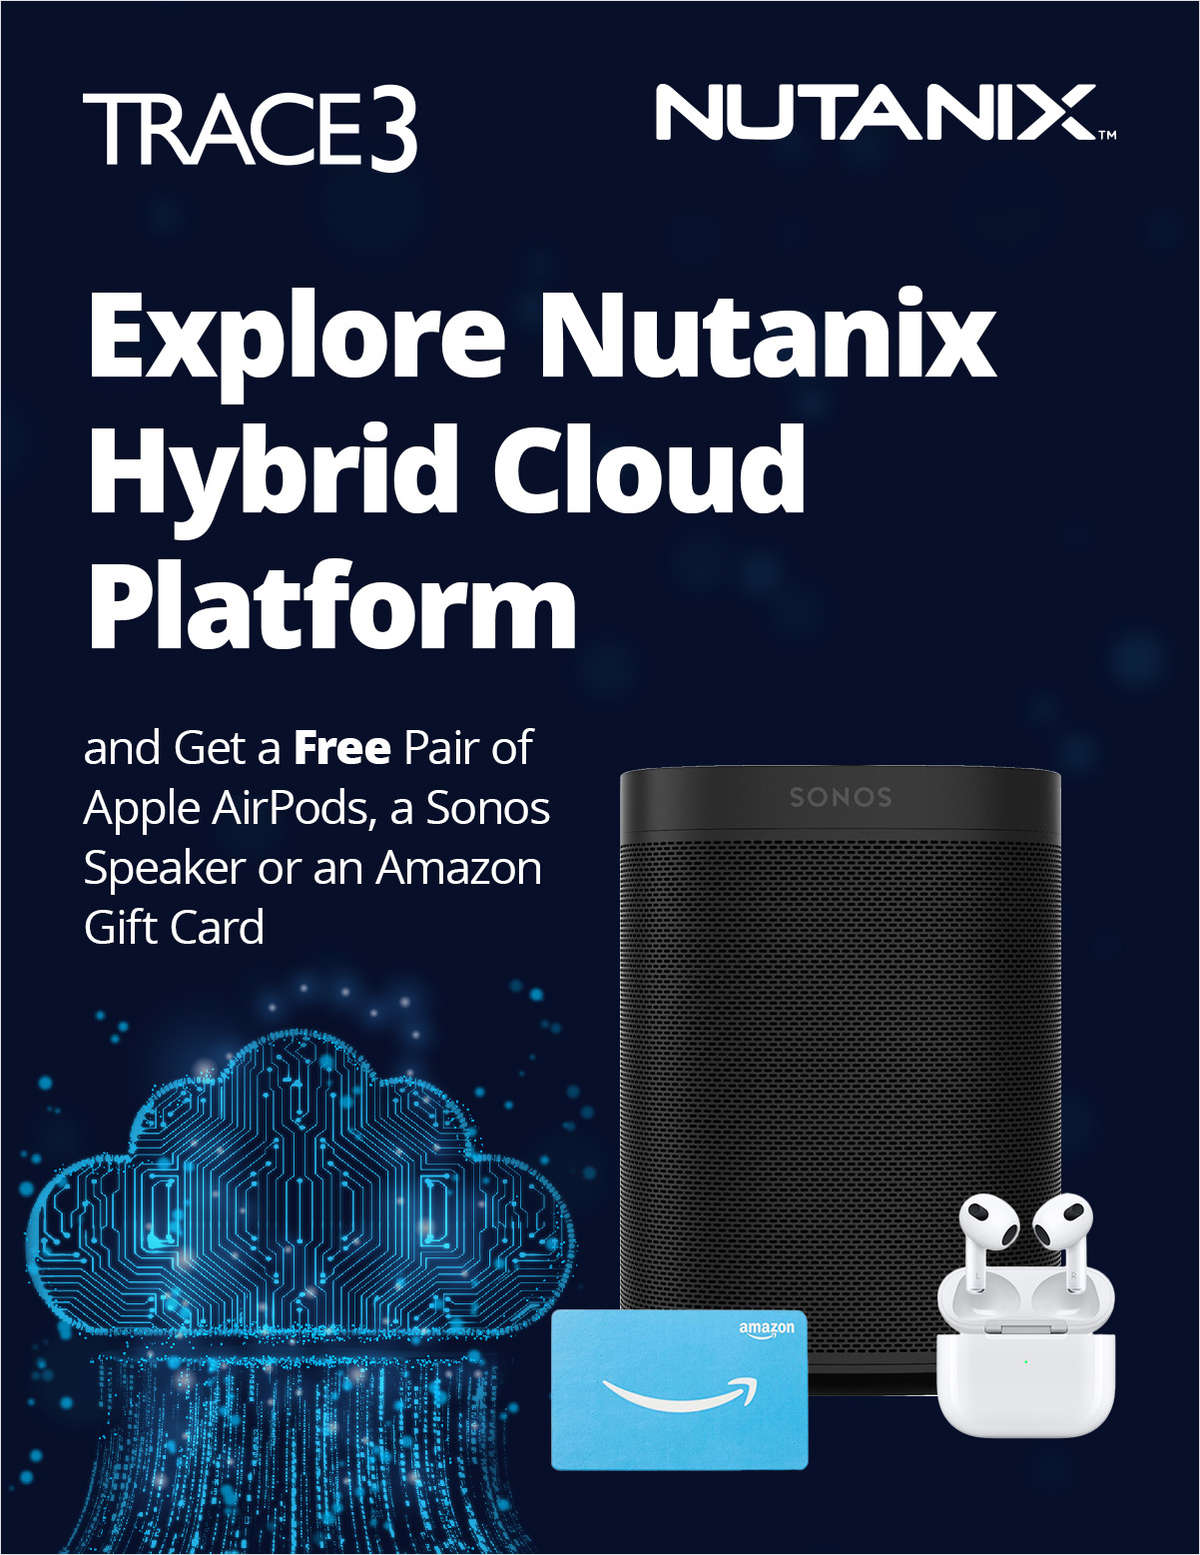 Explore Nutanix Hybrid Cloud Platform, and We'll Double Your Rewards